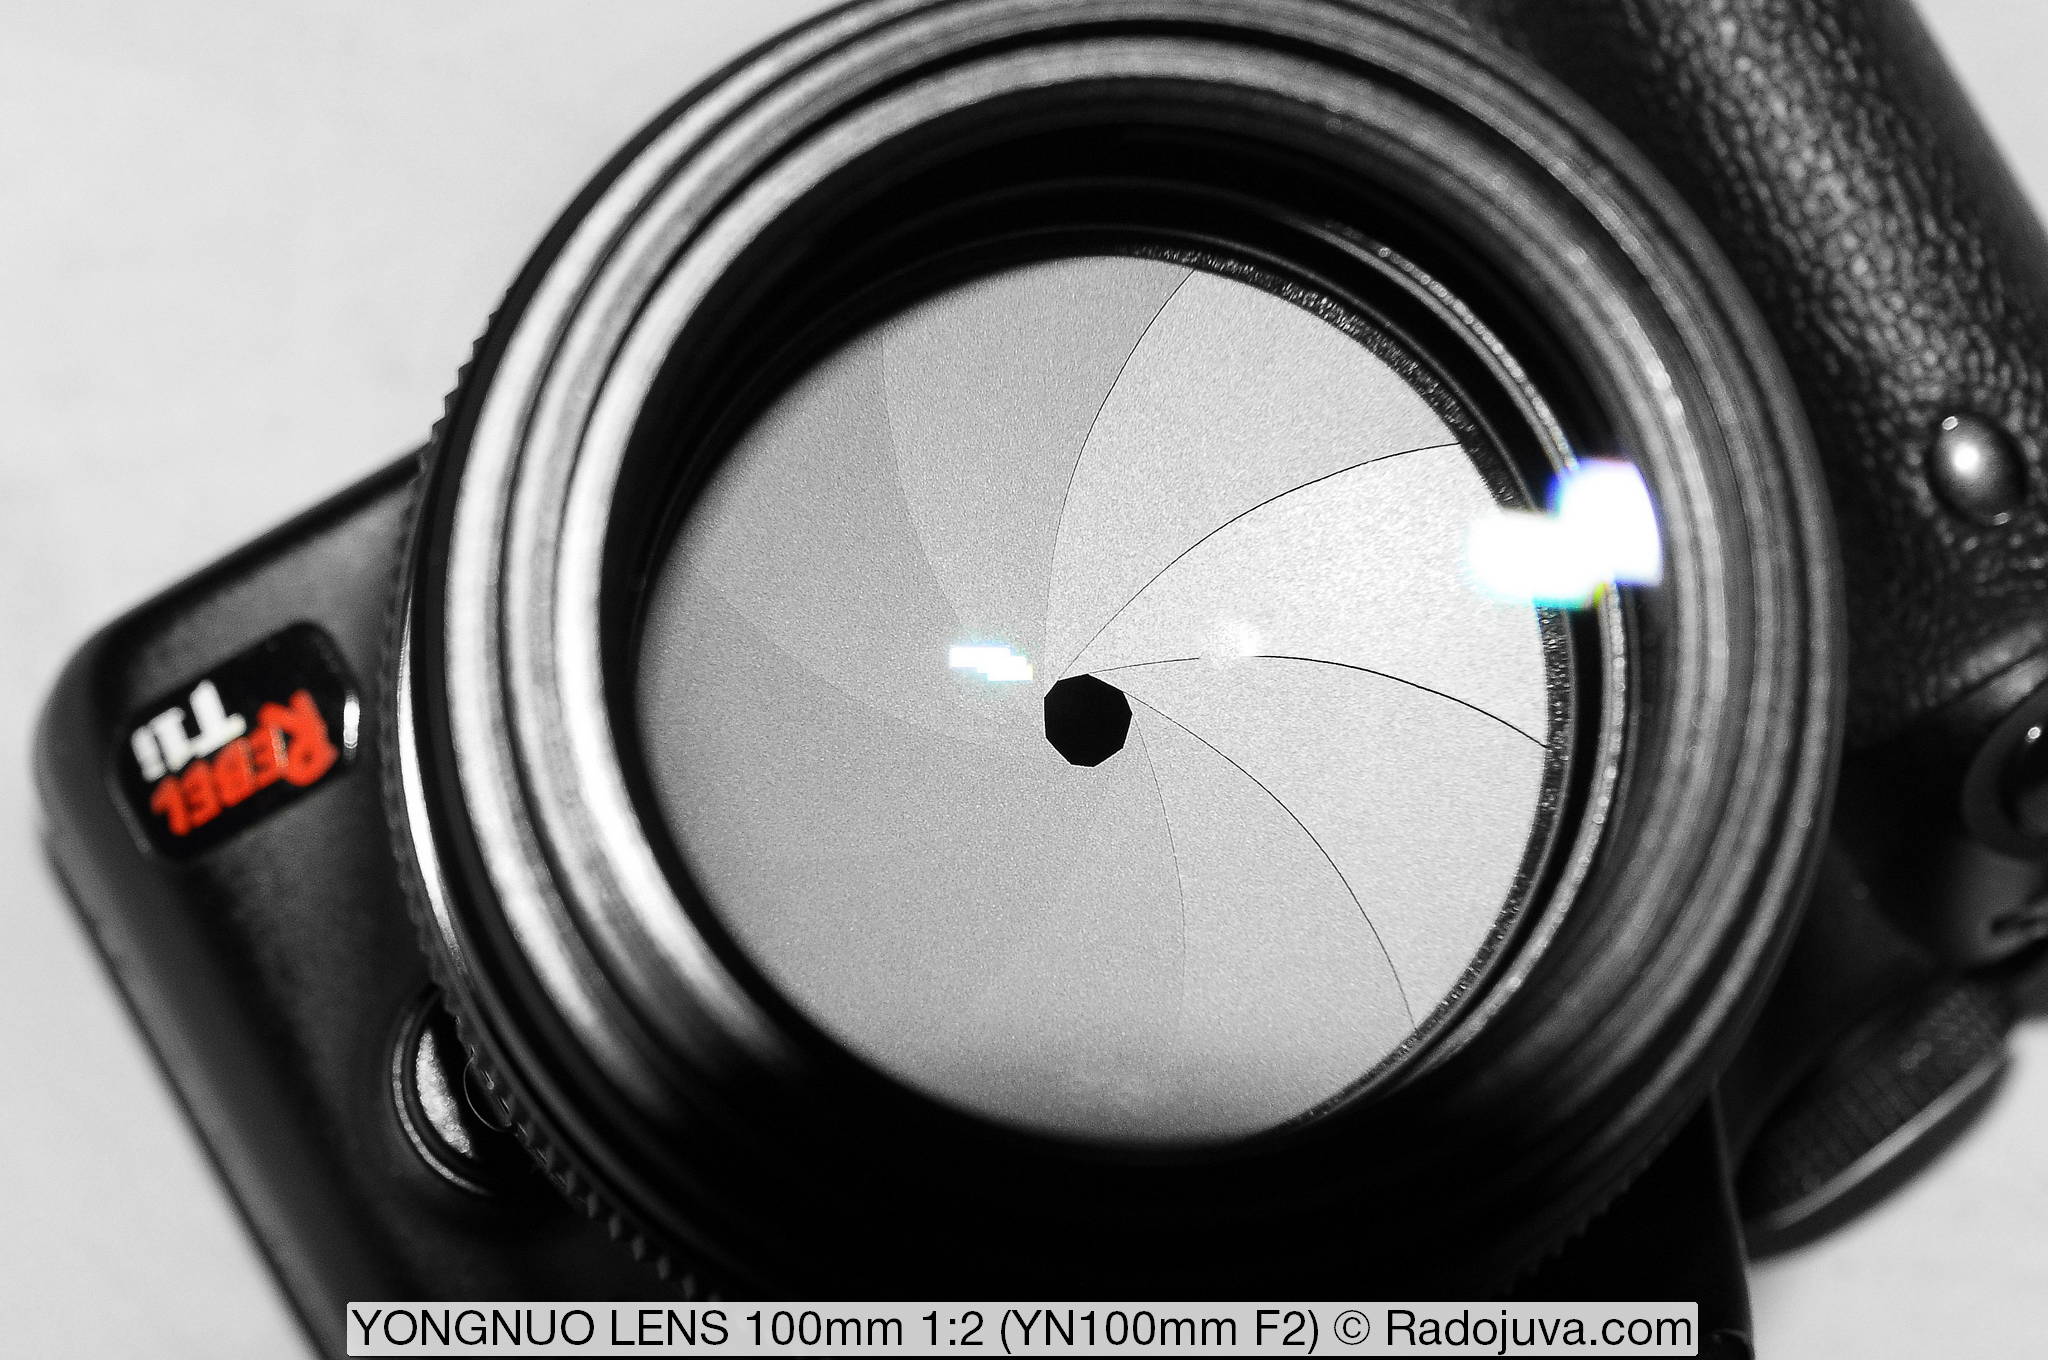 Yongnuo YN 100mm f / 2 lens